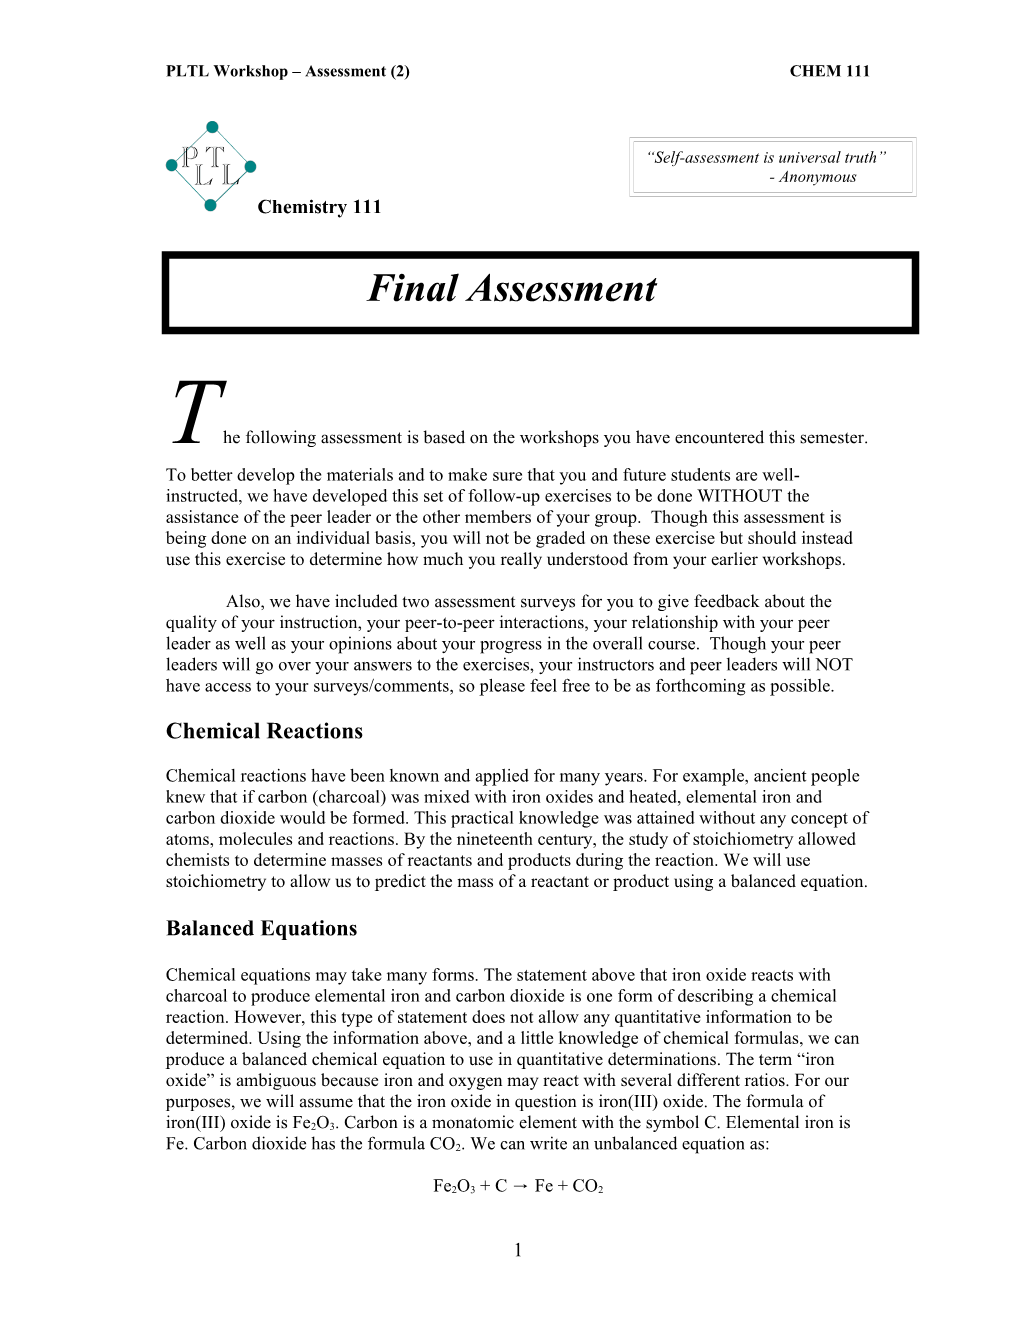 PLTL Workshop Assessment (2) CHEM 111